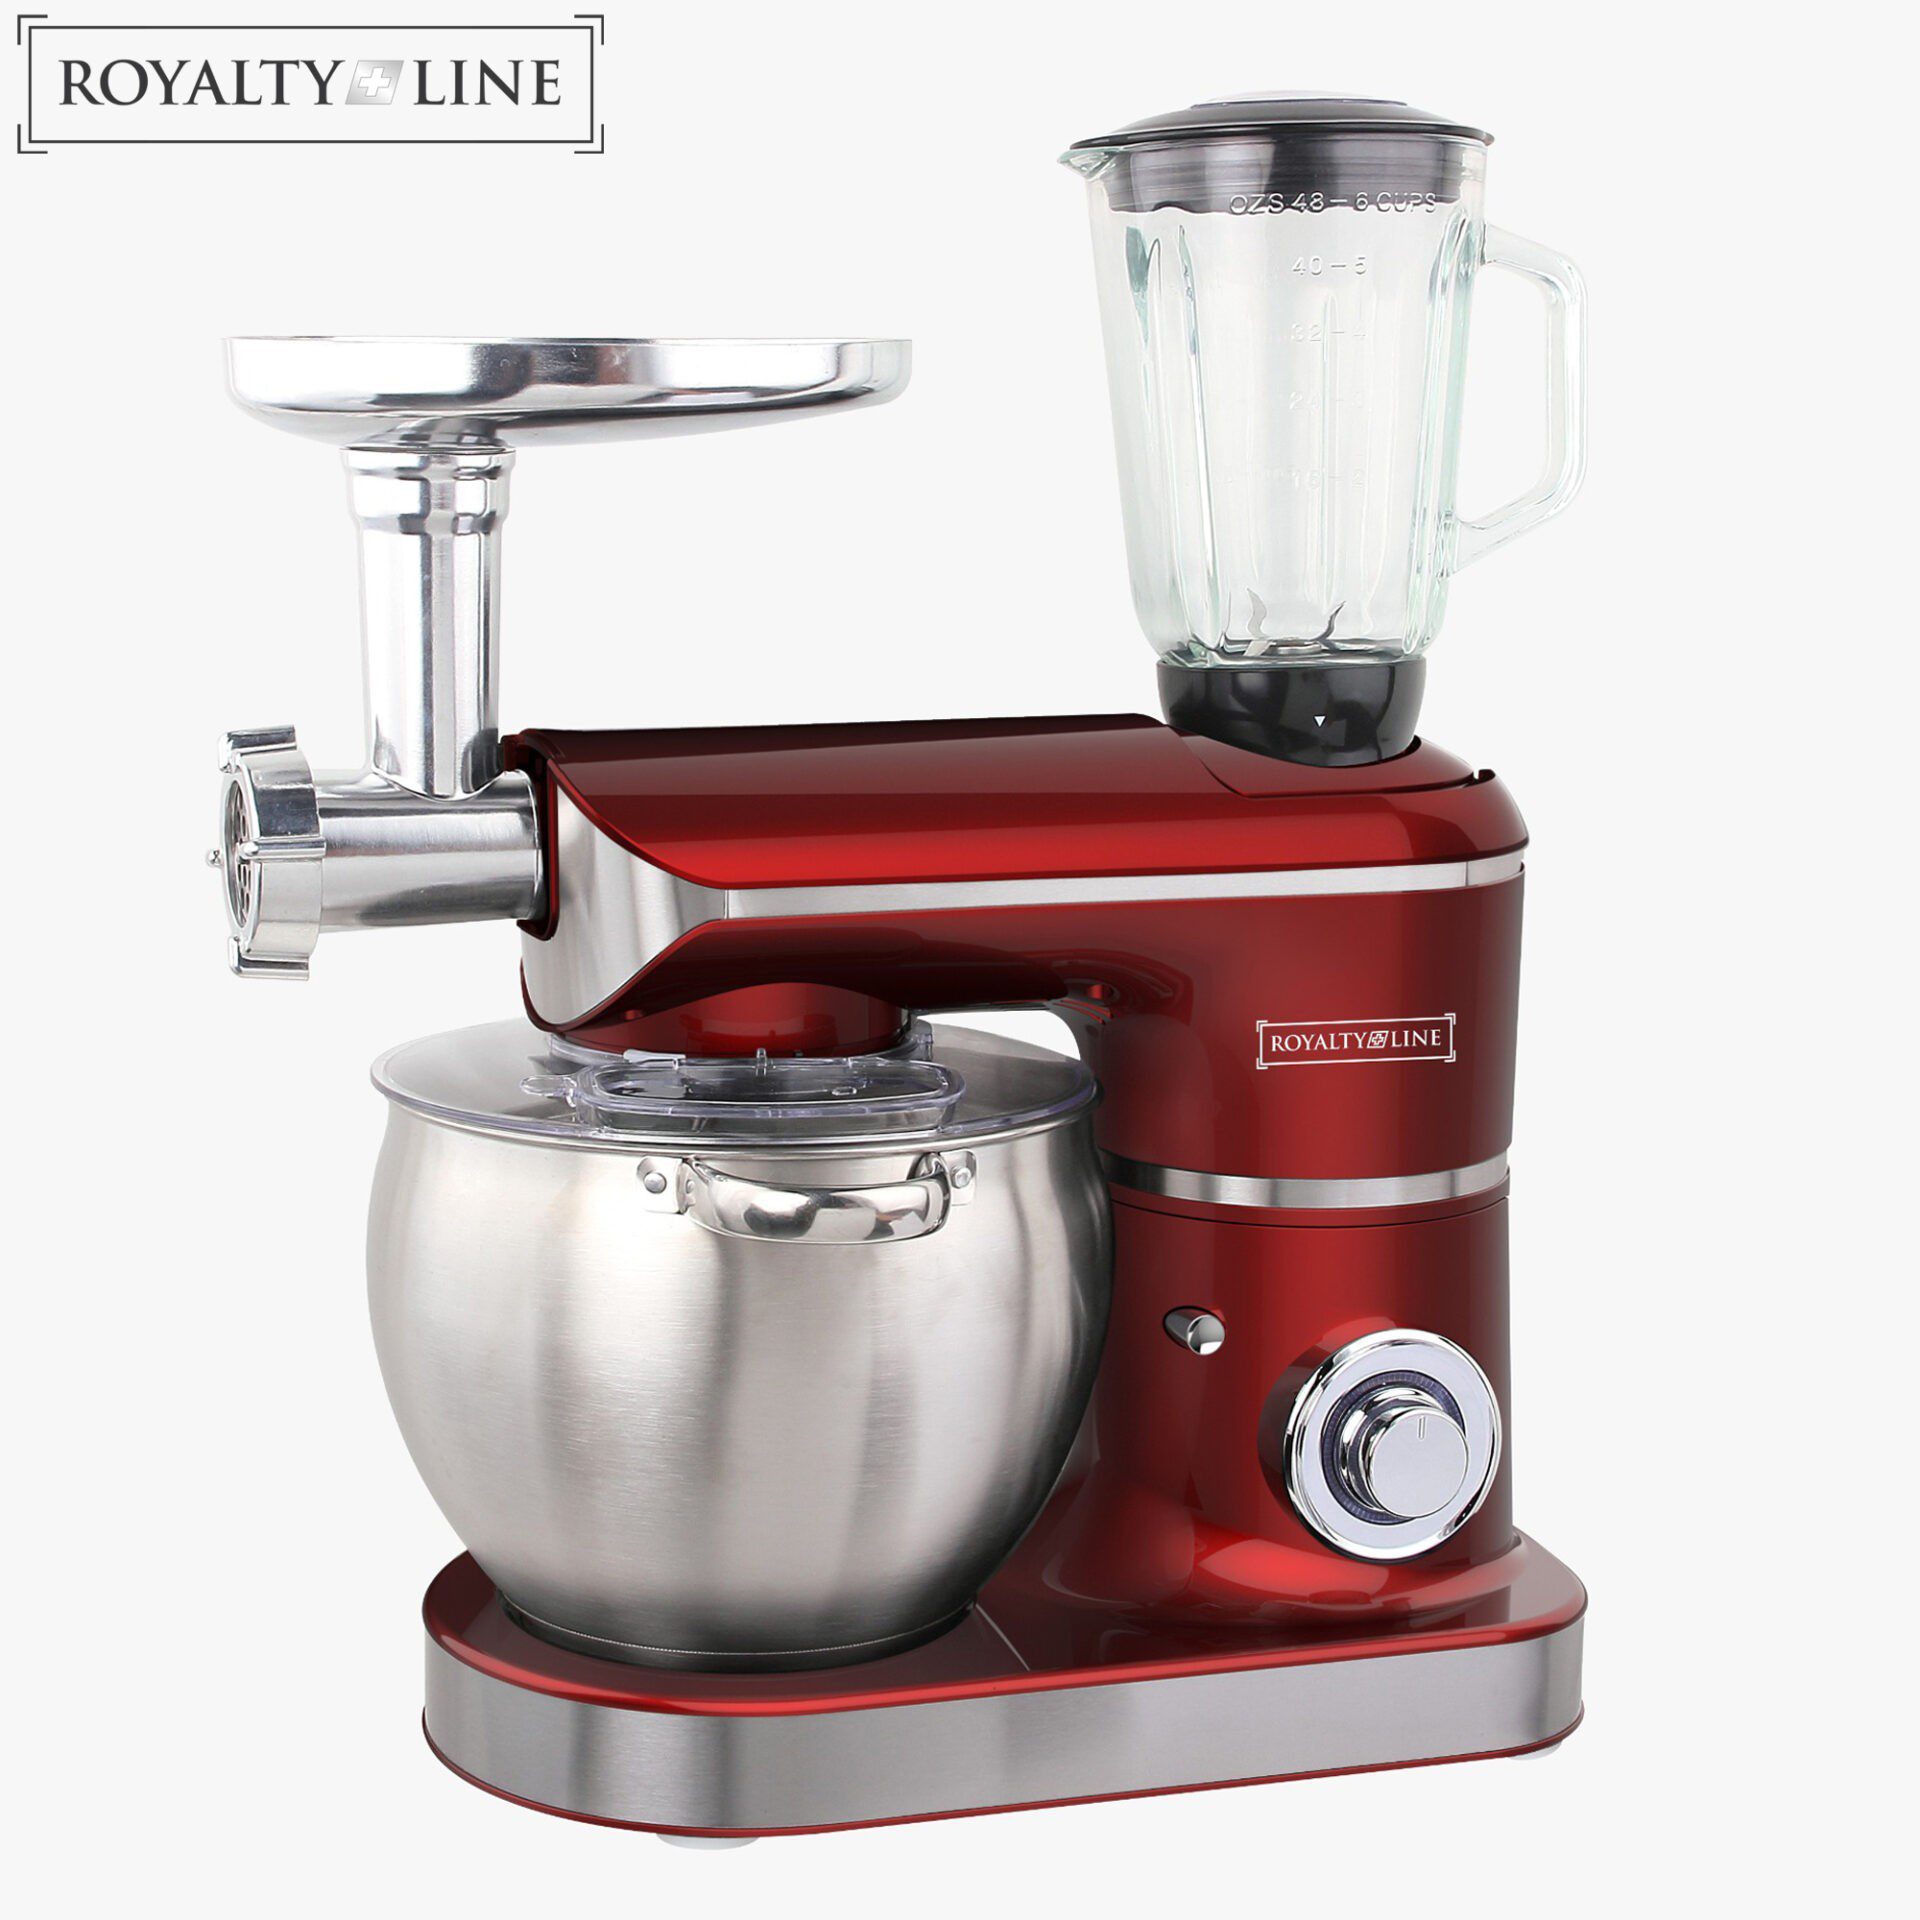 Royalty Line Kitchen Machine 3in1 2200W, 8.5L, Red